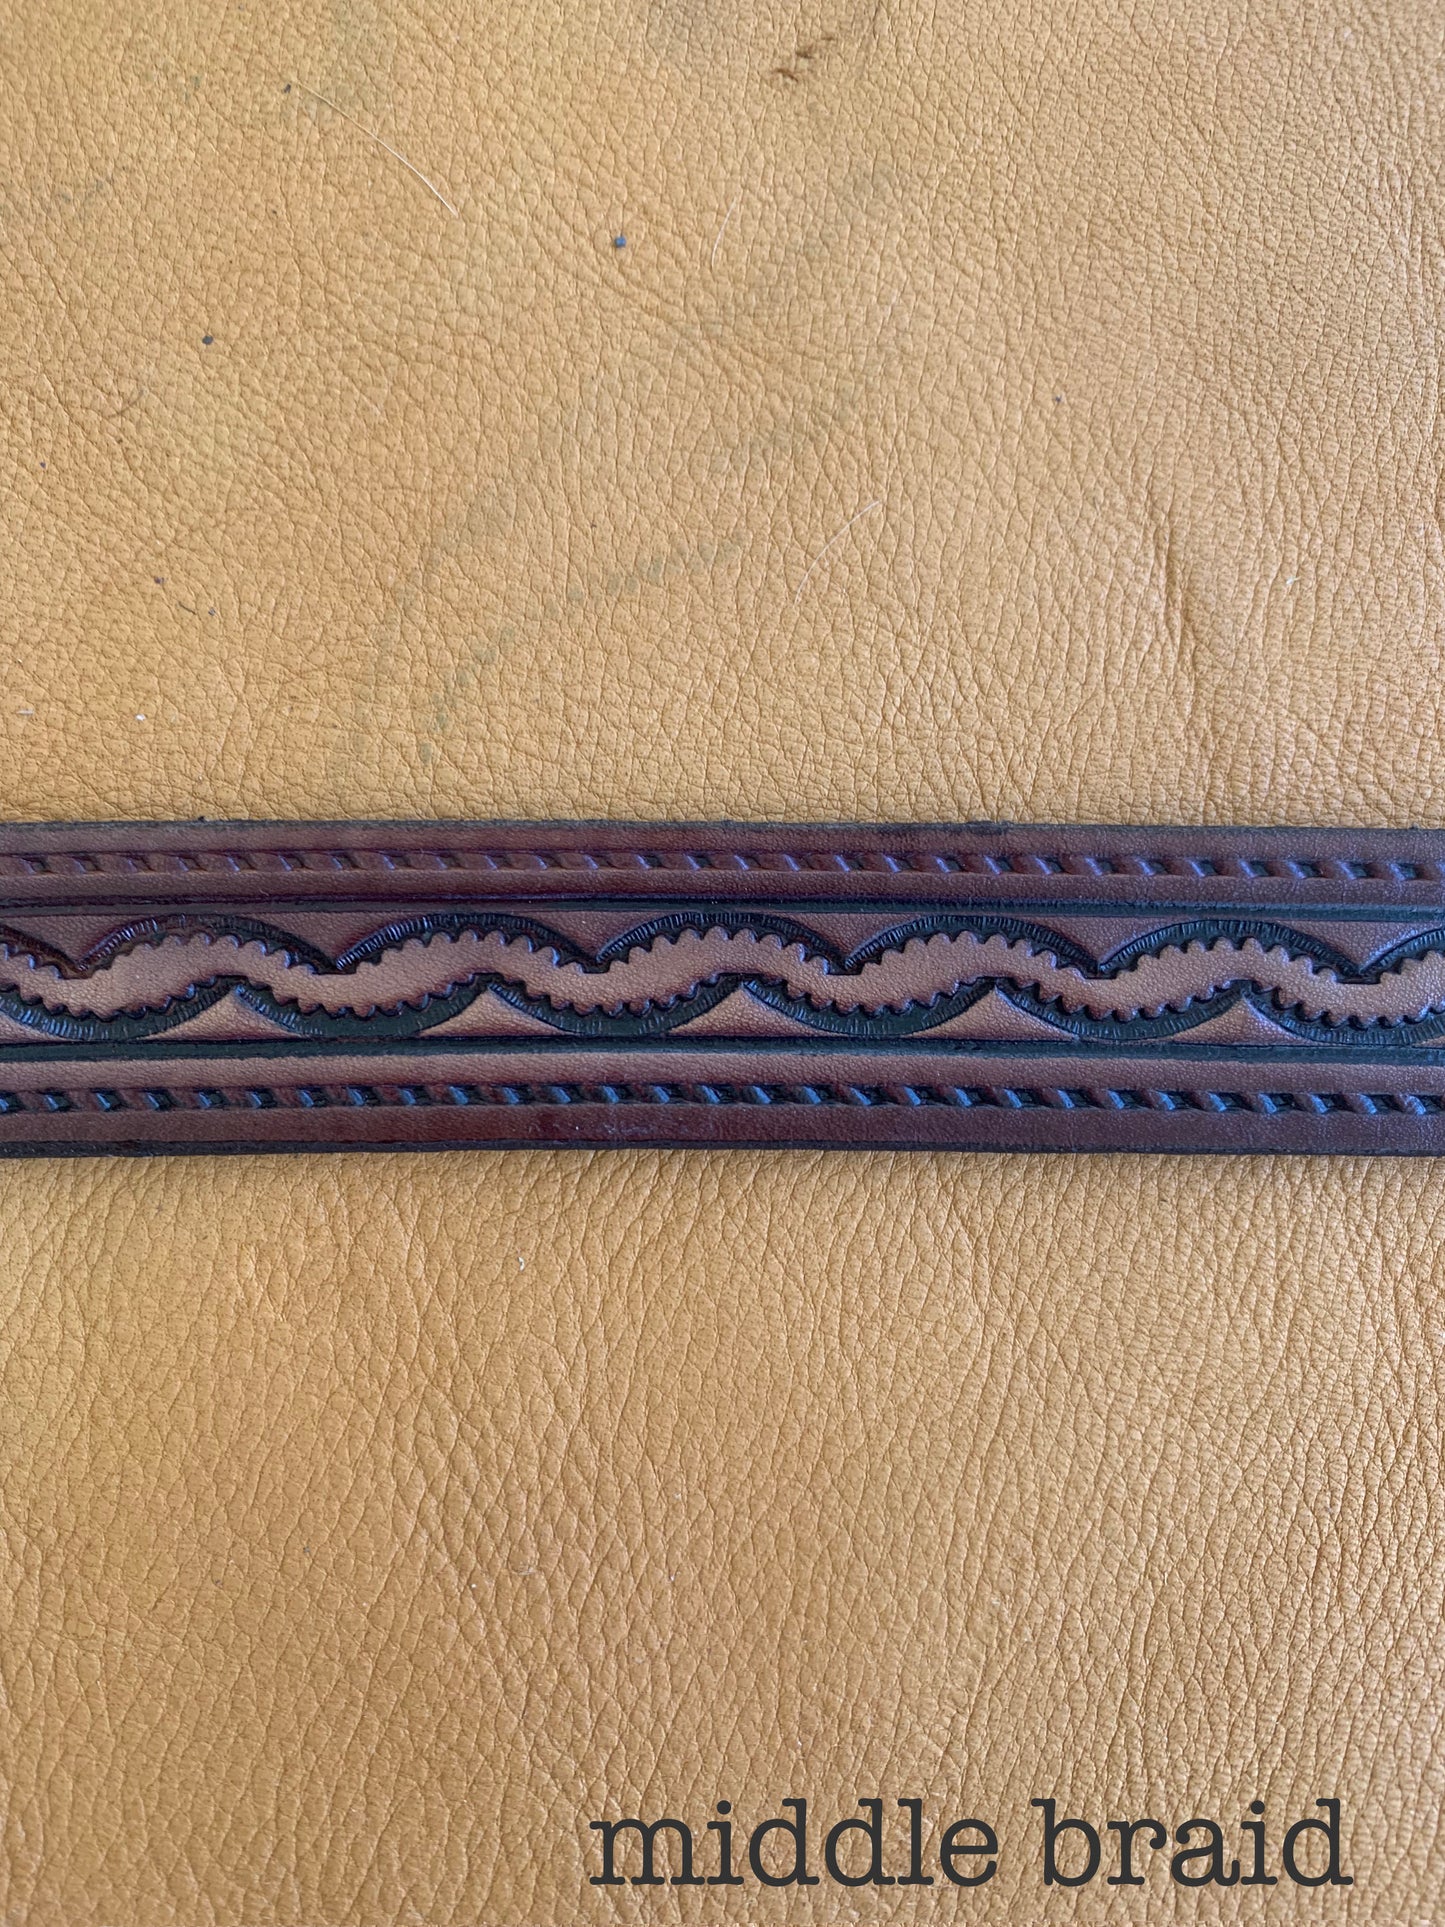 Patterned Leather Belt